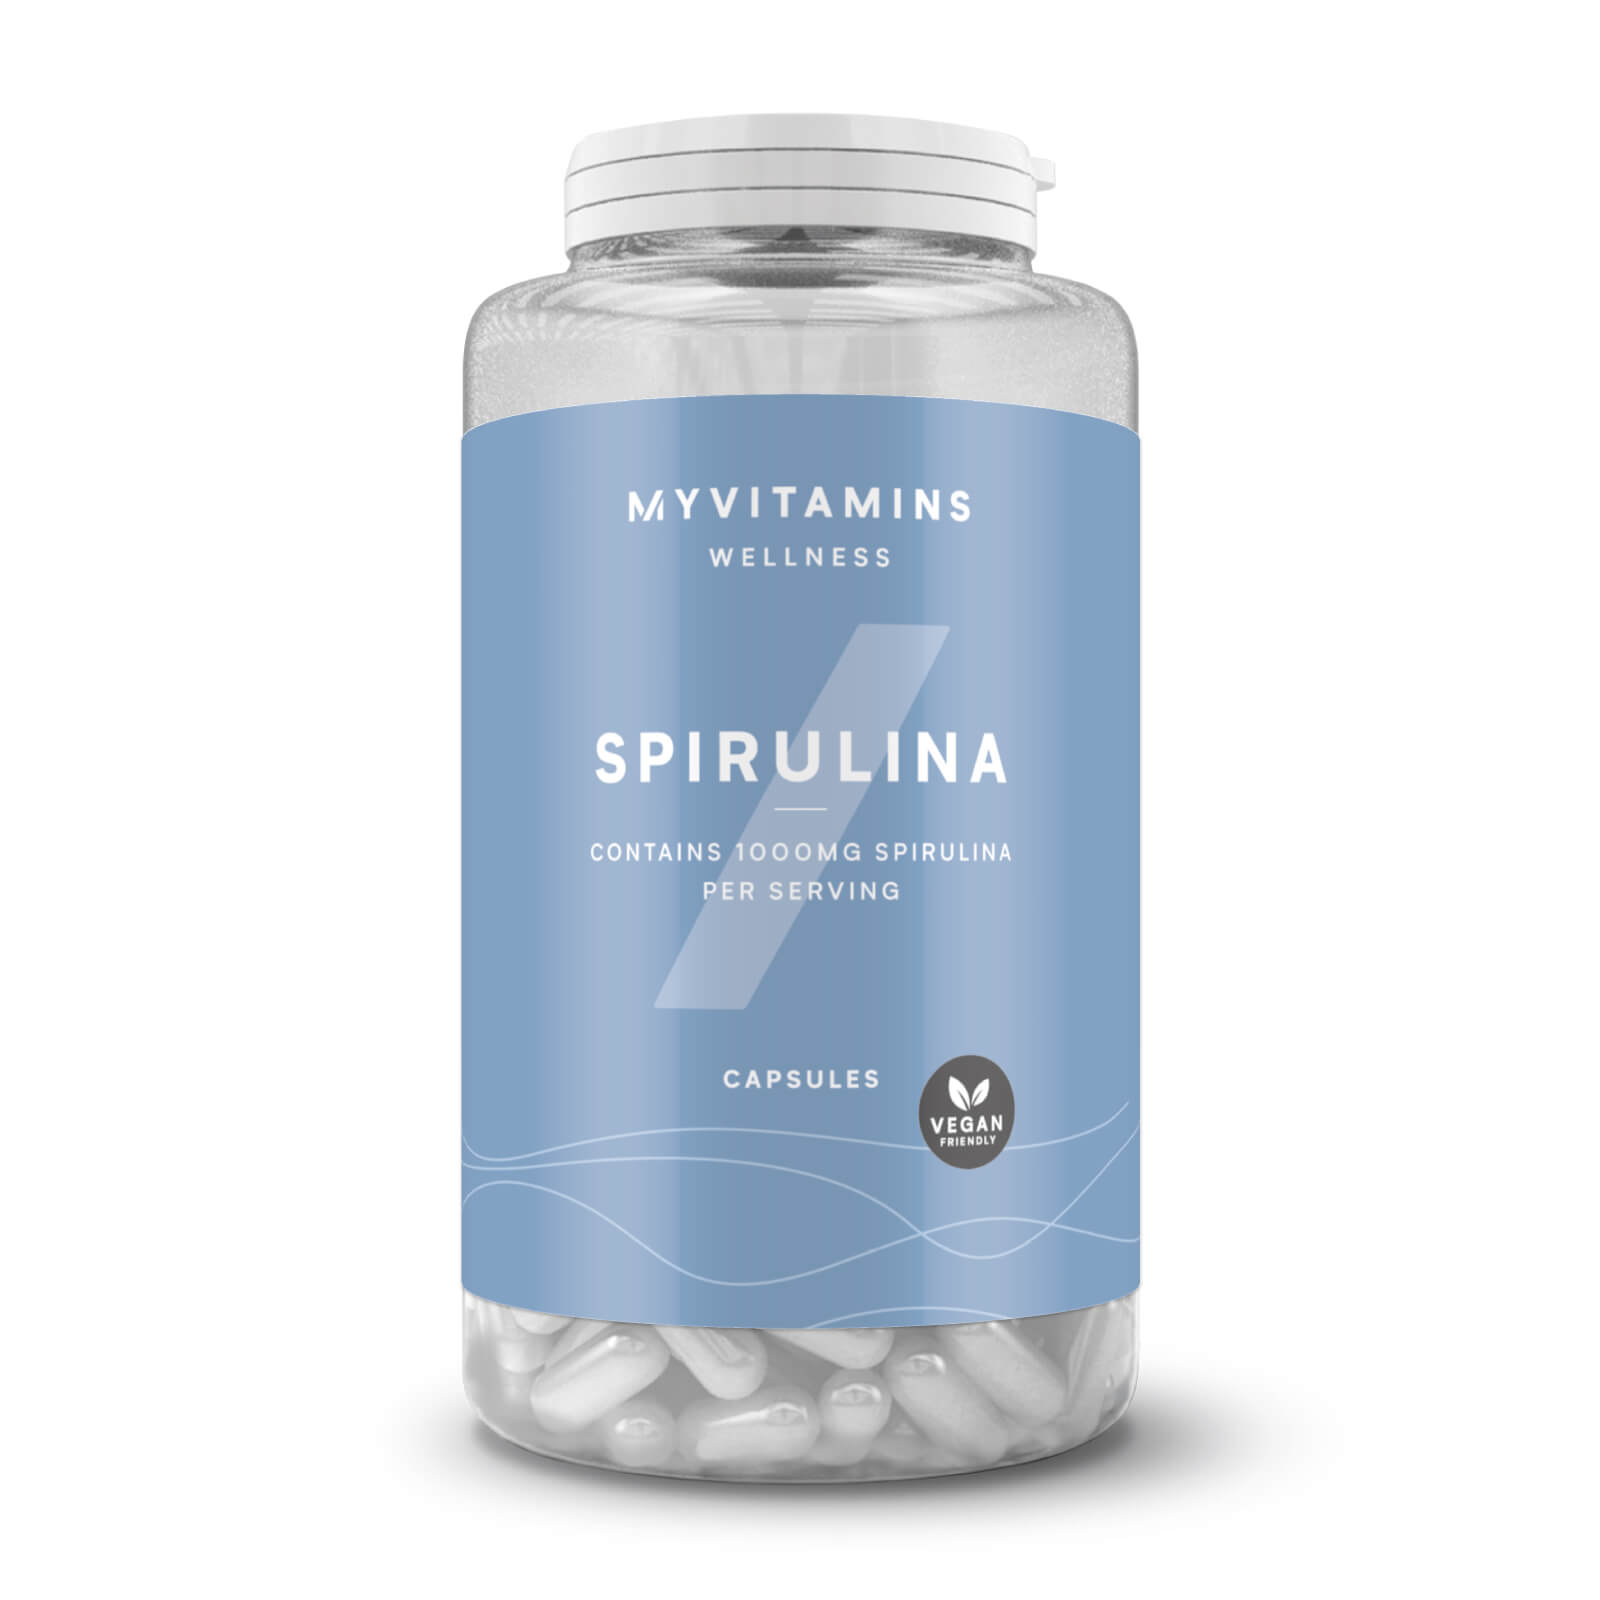 Myvitamins Spirulina Capsules - 60Capsules